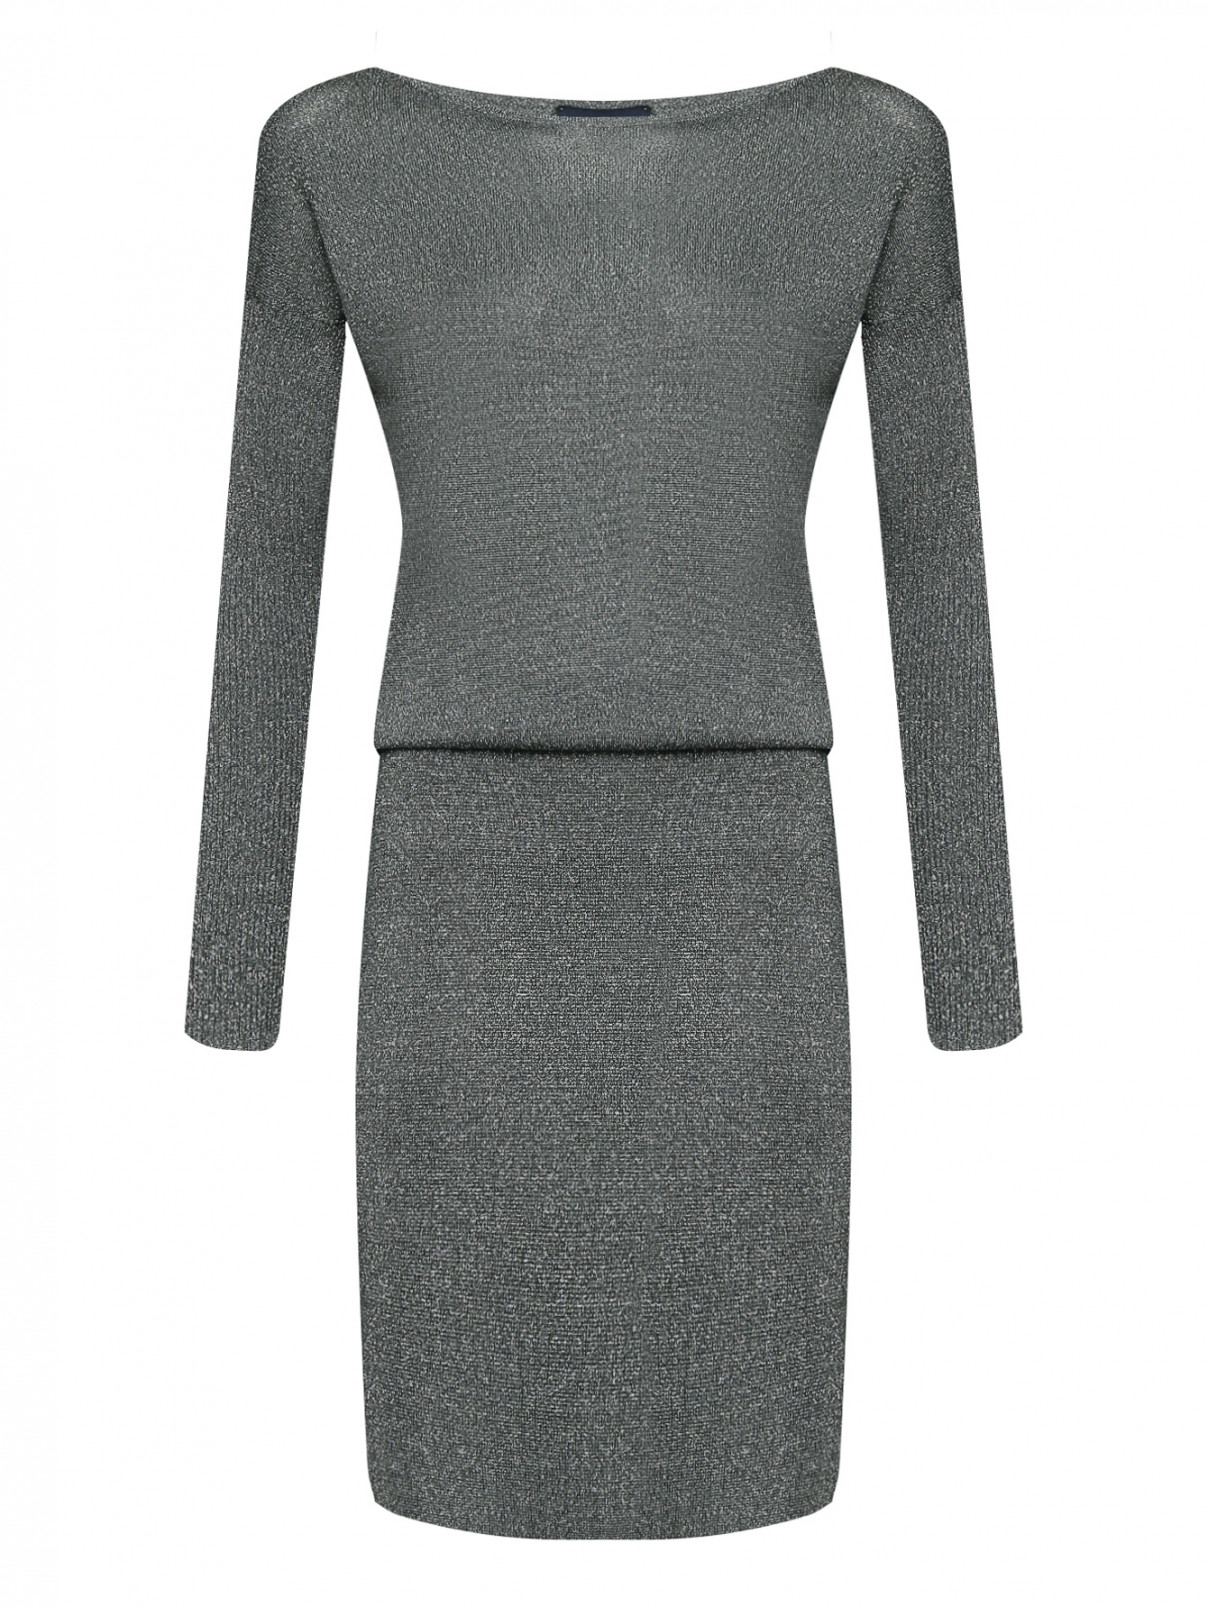 Трикотажное платье с люрексом Luisa Spagnoli  –  Общий вид  – Цвет:  Серый